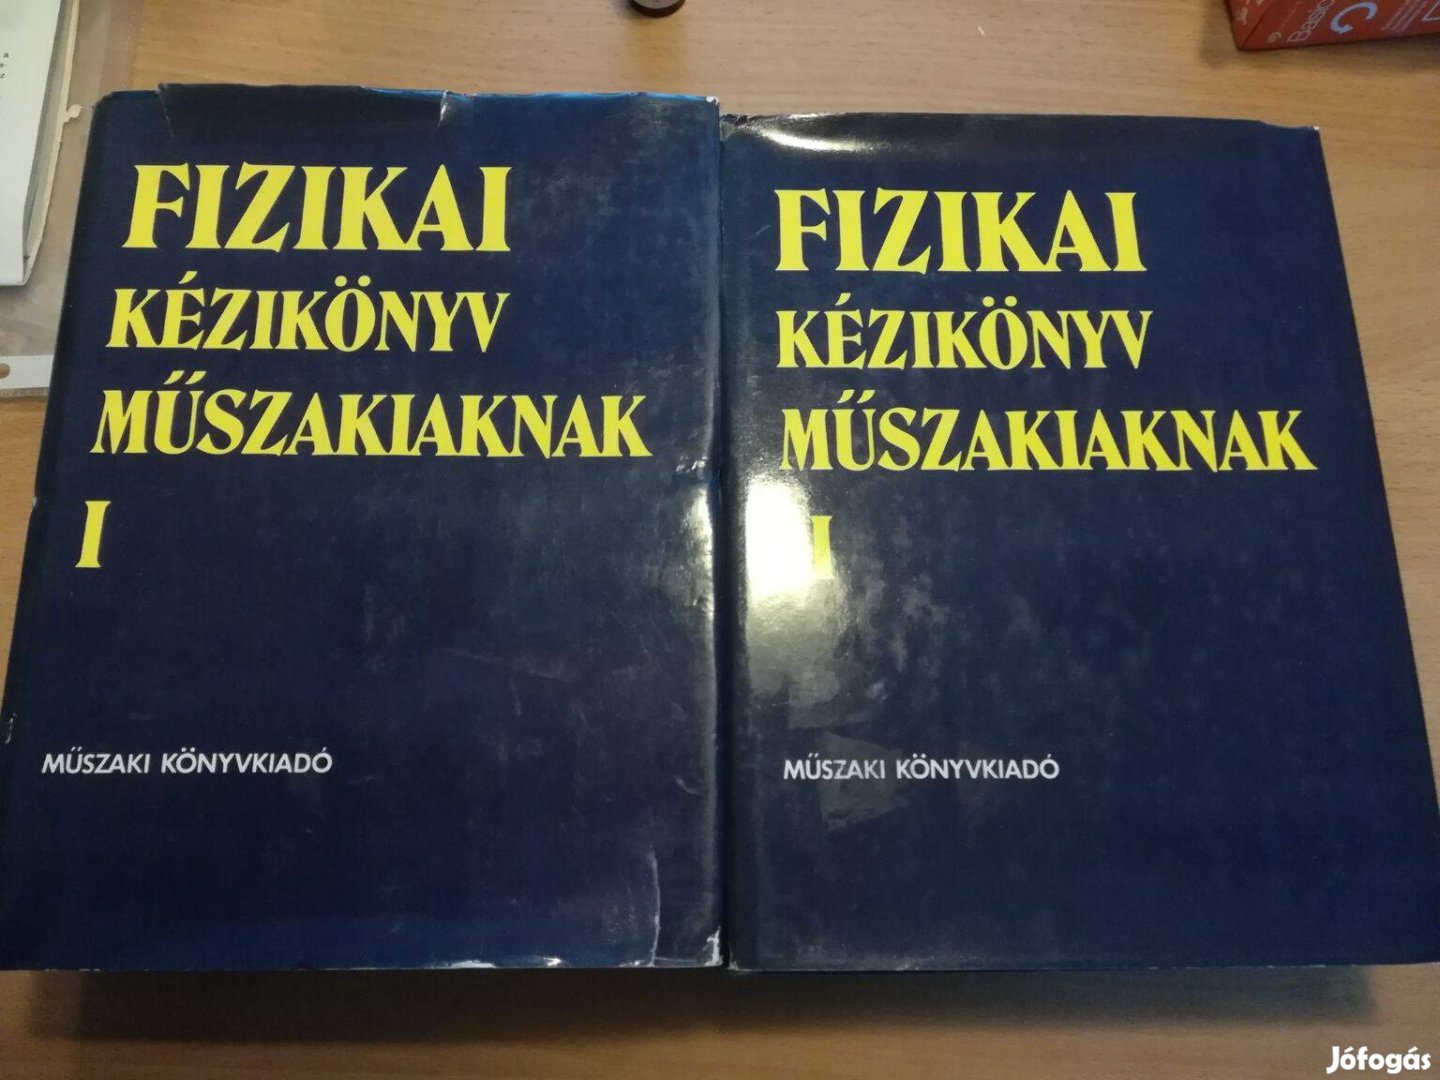 Fizikai kézikönyv műszakiaknak 1-2 c könyvek együtt 2000 Ft